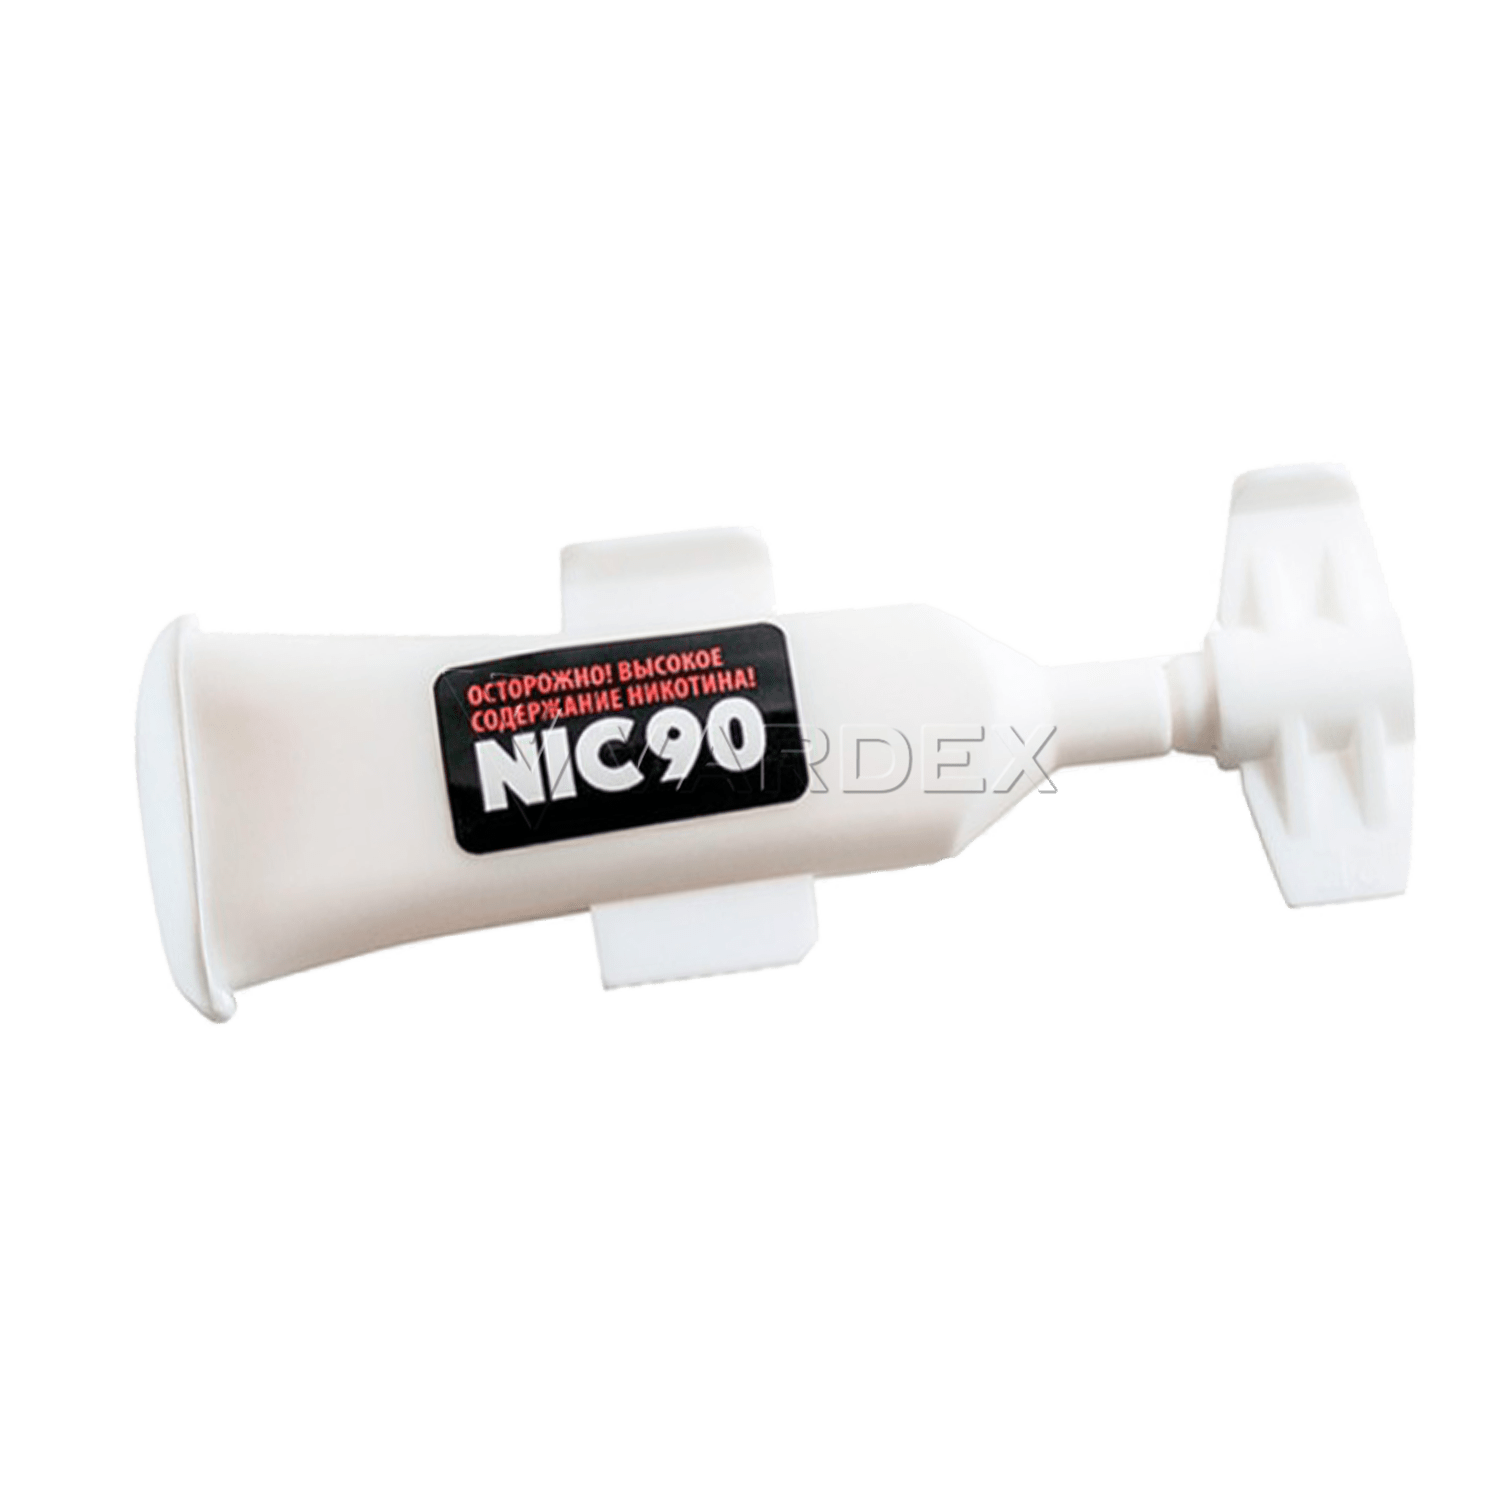 Никобустер Nic90, купить усилитель крепости Nic 90 в Москве и  Санкт-Петербурге